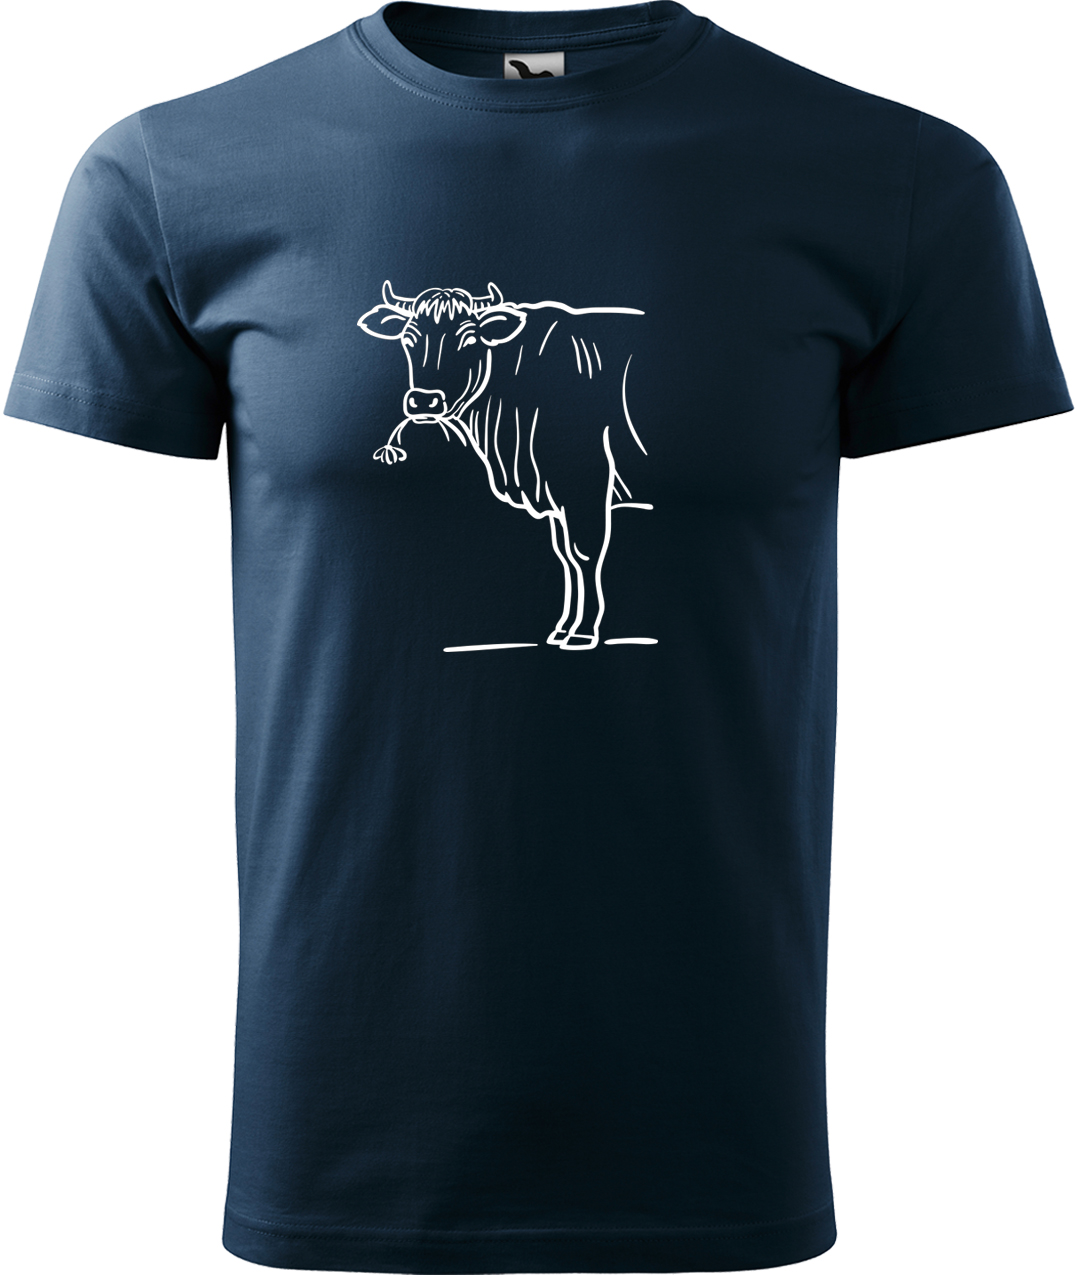 Pánské tričko s krávou - Býk Velikost: XL, Barva: Námořní modrá (02), Střih: pánský